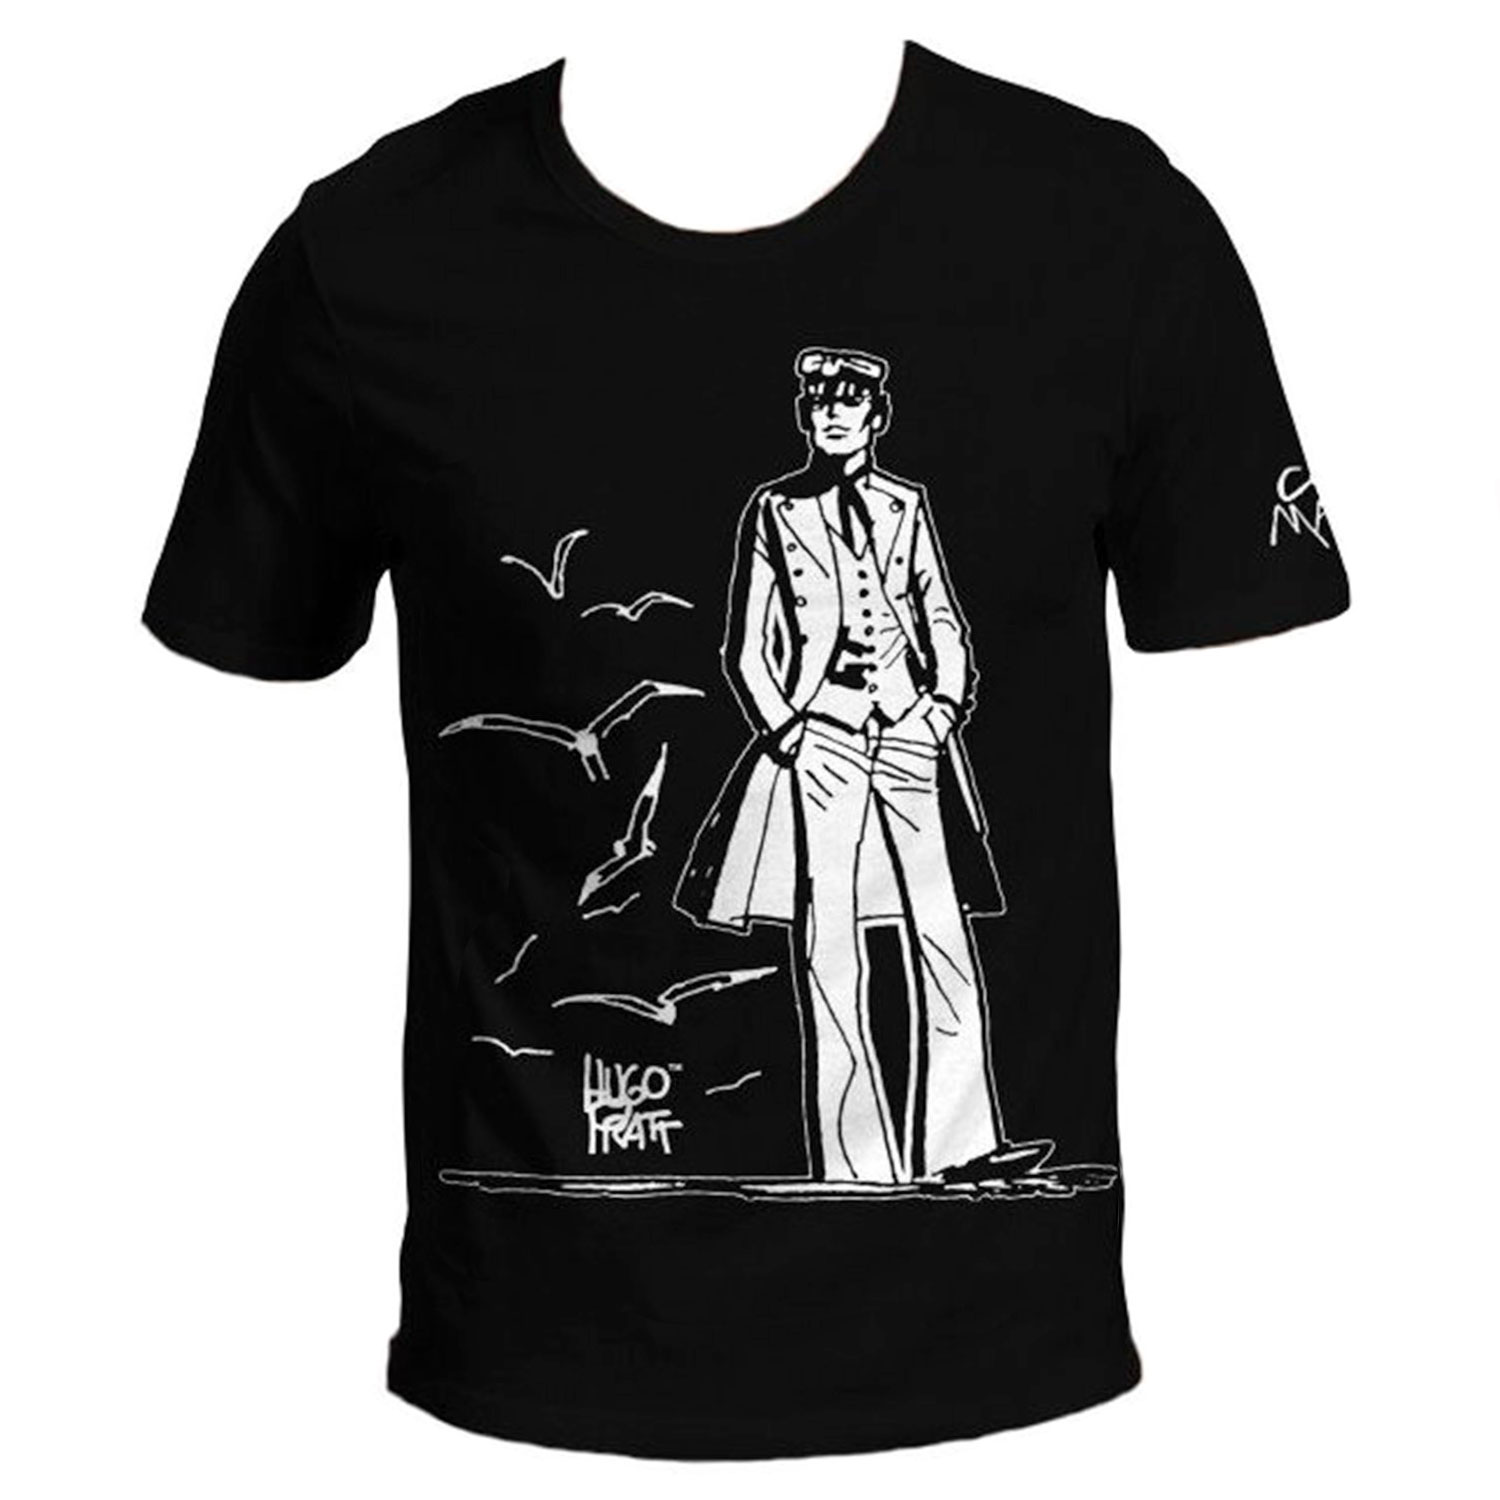 T-shirt Hugo Pratt :  Corto Maltese , 40 ans ! - Noir - Taille S